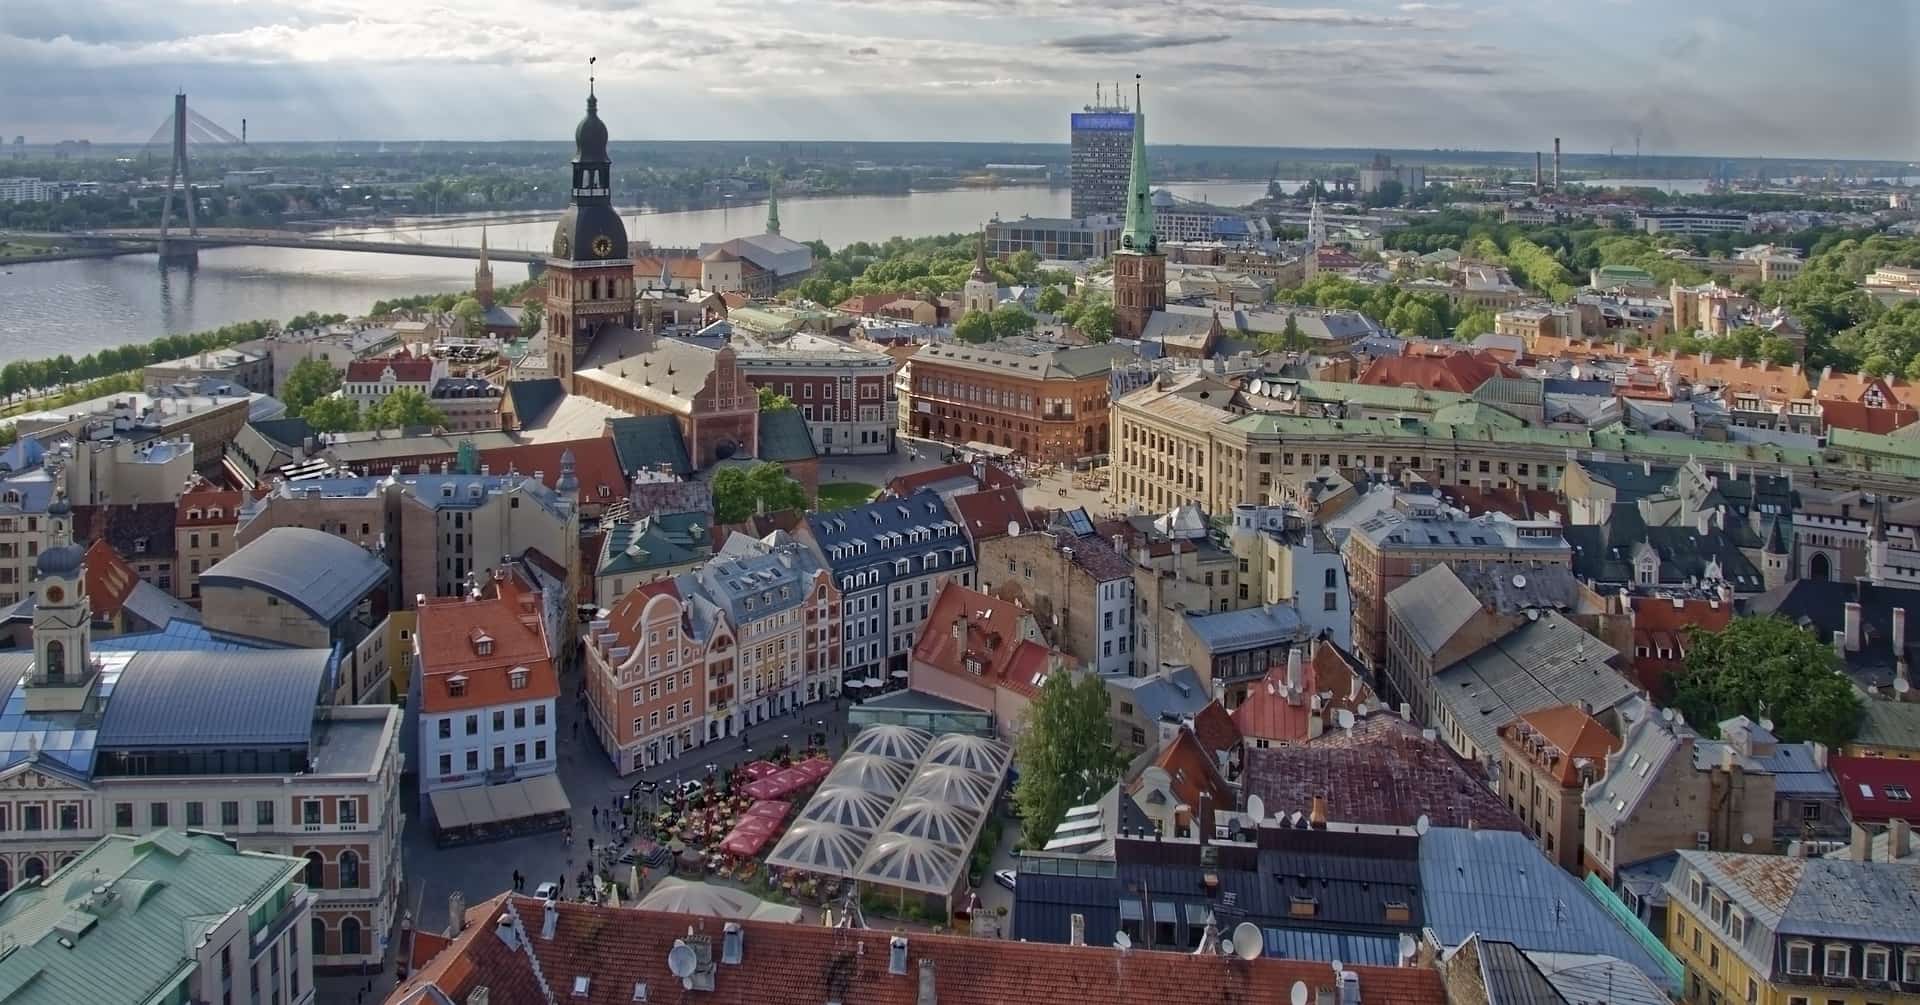 Ciudades europeas baratas y bonitas. ¿Dónde viajar?: Riga en Letonia